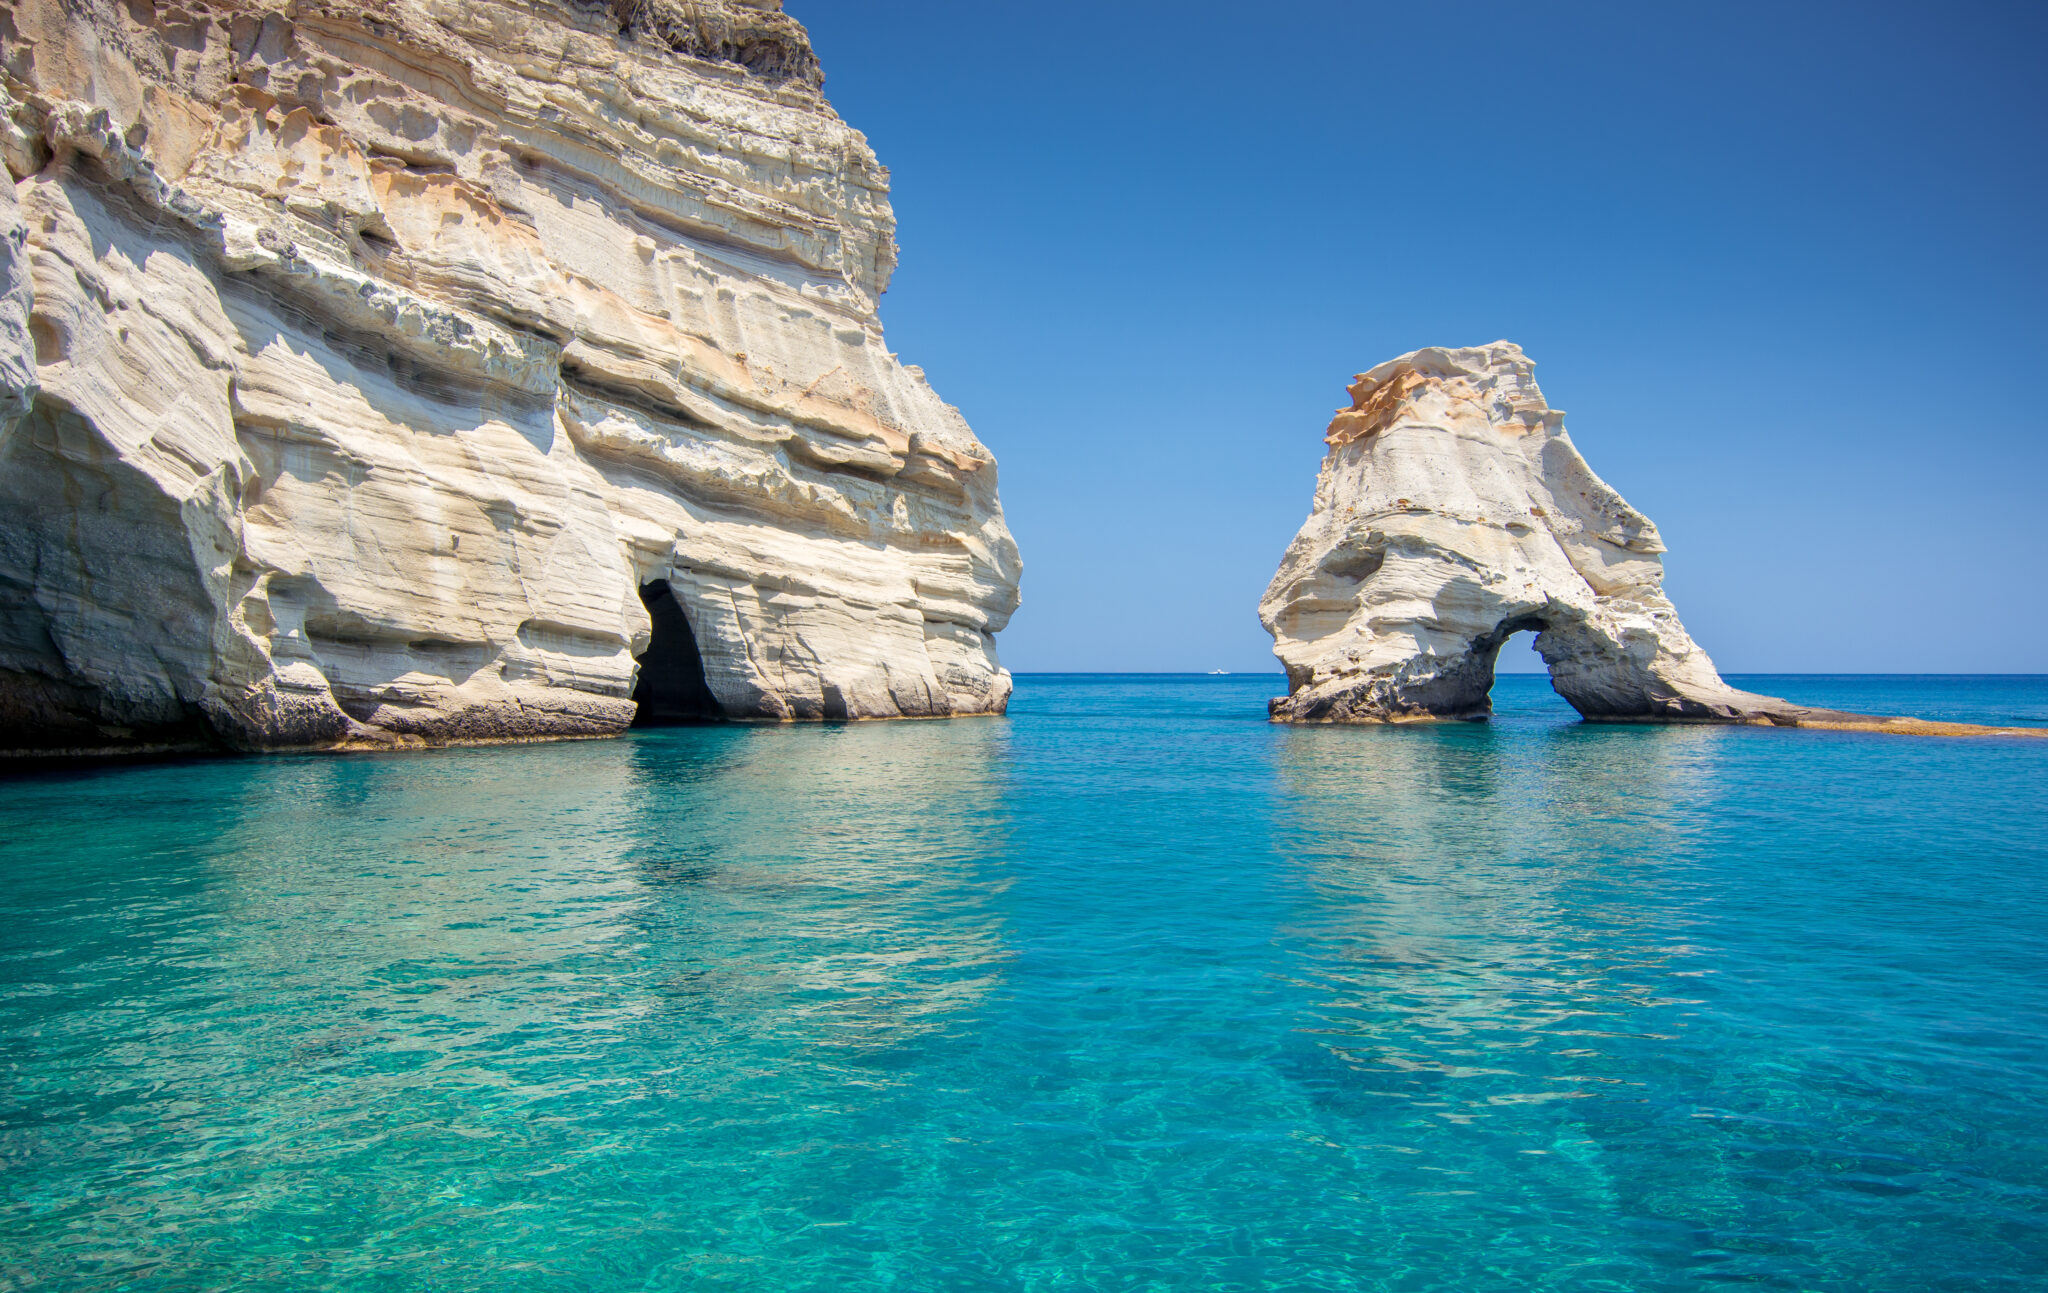 Ο νέος τίτλος που προτείνω γιαείναι: "Ιδιαίτερη επιτυχία για τον ελληνικό τουρισμό: Οι Βρετανοί ξόδεψαν πάνω από 20 δισεκατομμύρια ευρώ σε διακοπές στην Ελλάδα τα τελευταία 10 χρόνια"
